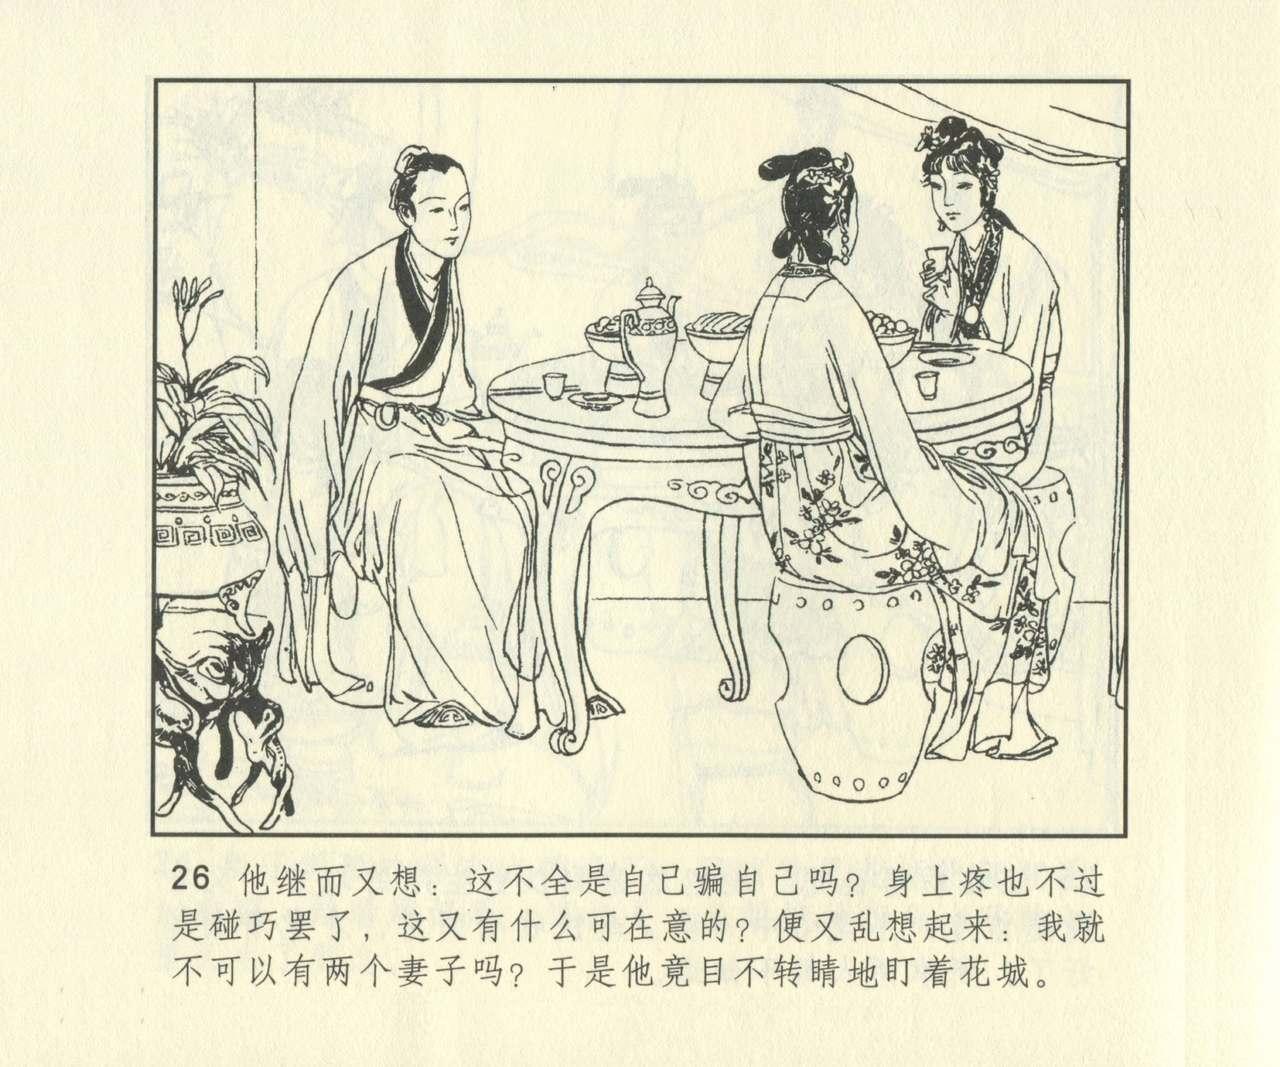 聊斋志异 张玮等绘 天津人民美术出版社 卷二十一 ~ 三十 642